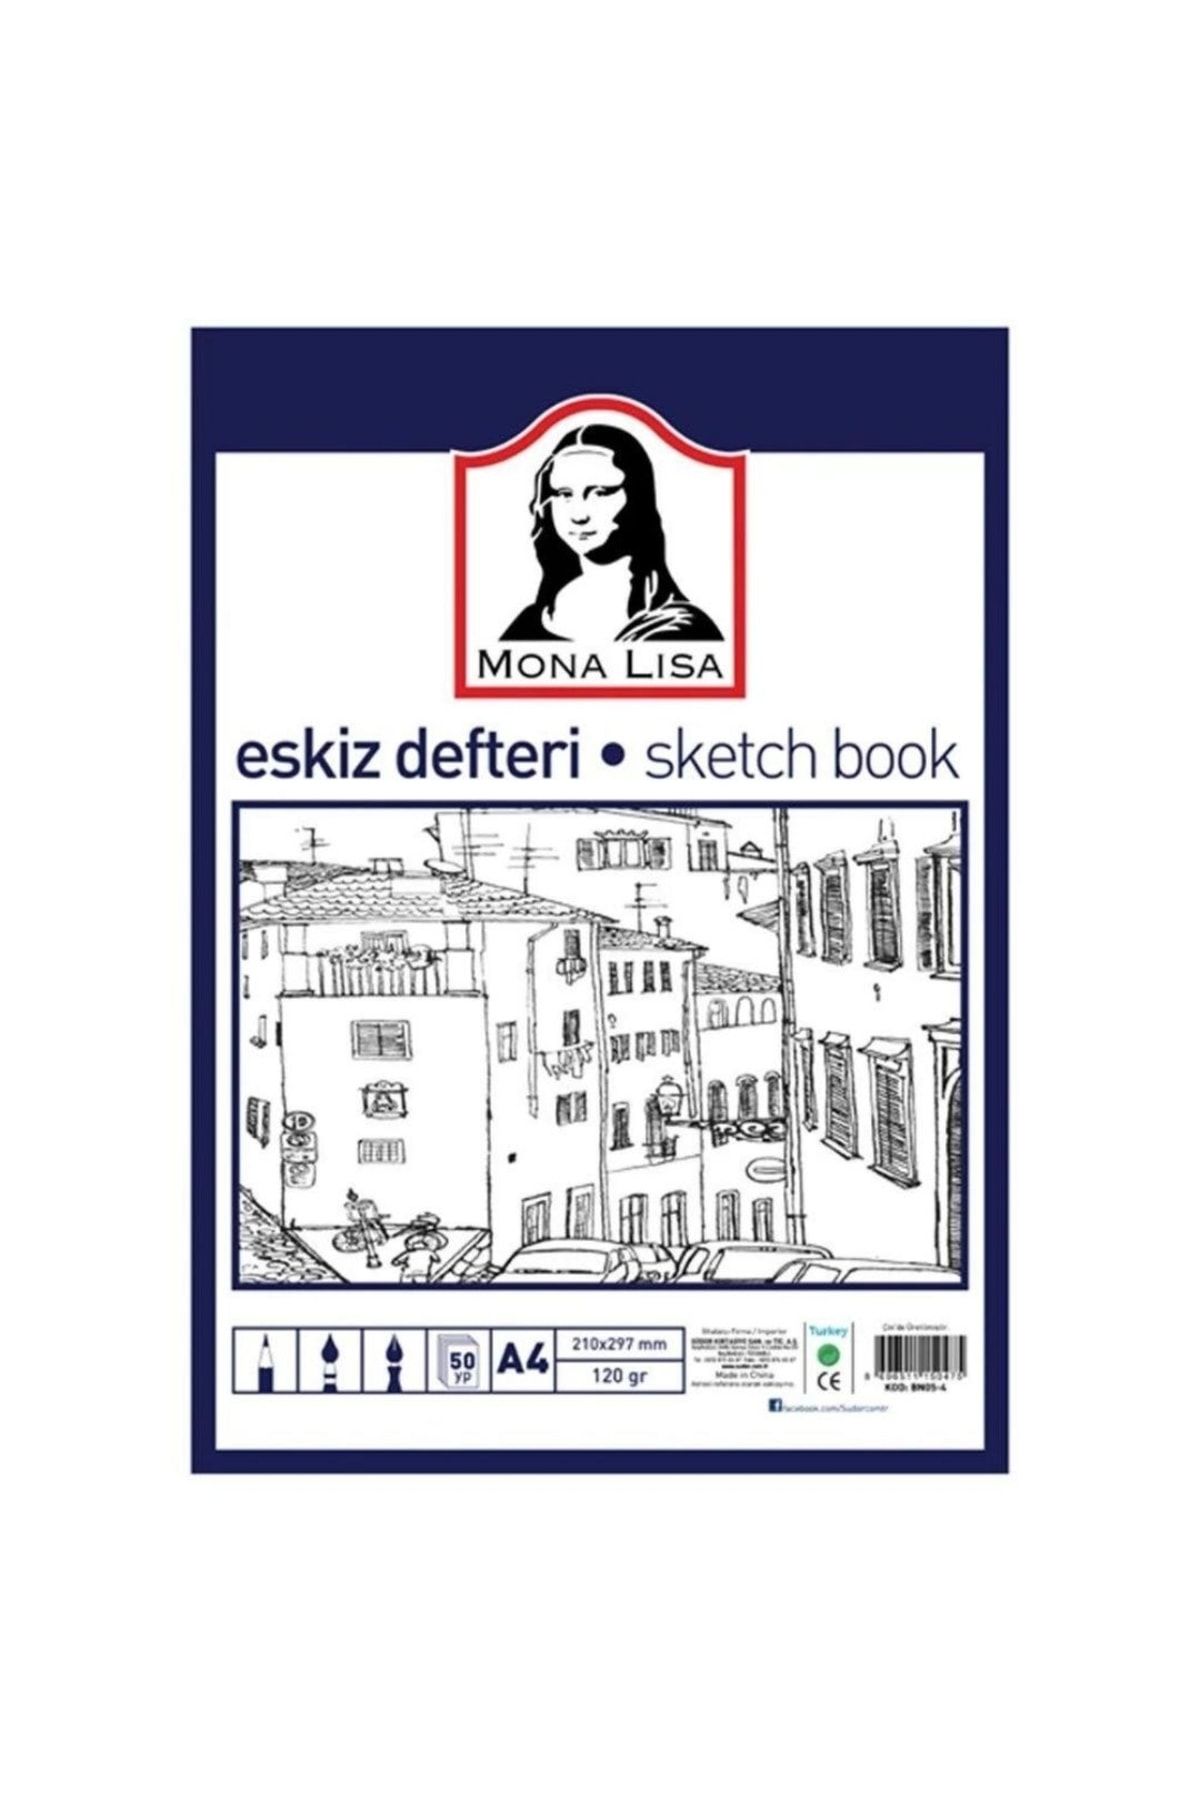 Monalisa Eskiz Defteri Sketch Book A4 120gr 50yp